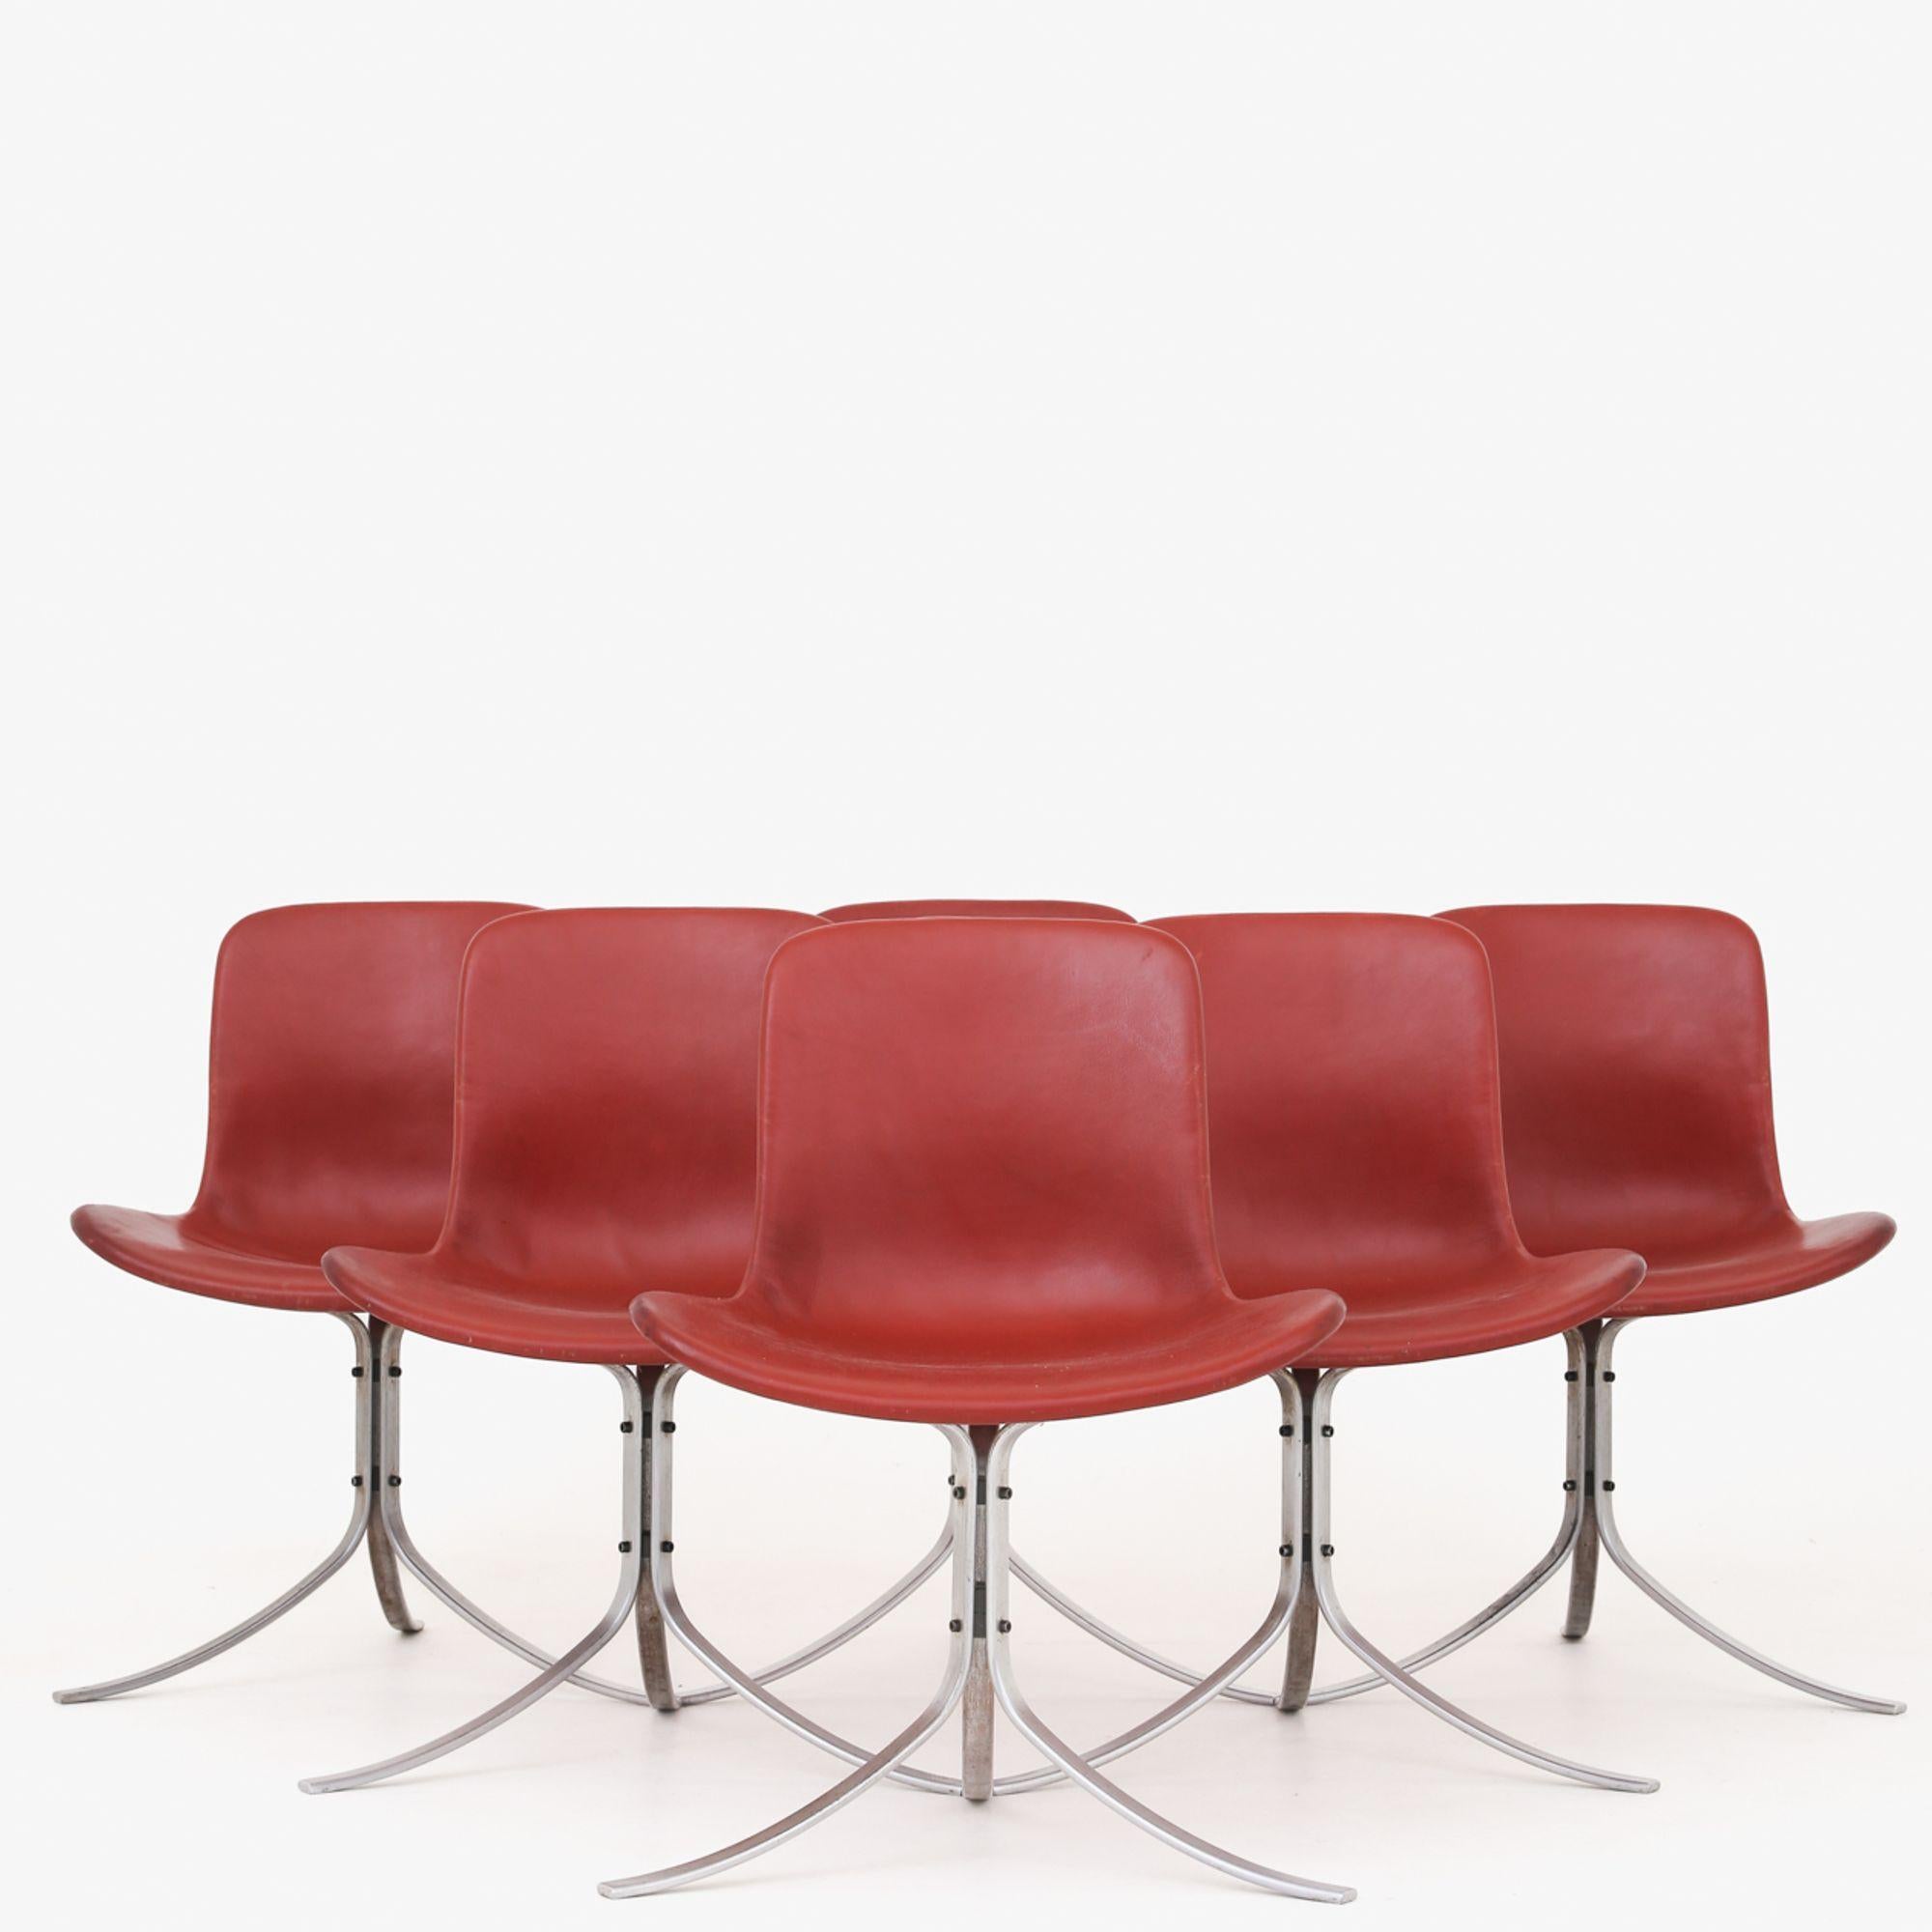 Set of 6 PK 9 Chairs by Poul Kjærholm 1